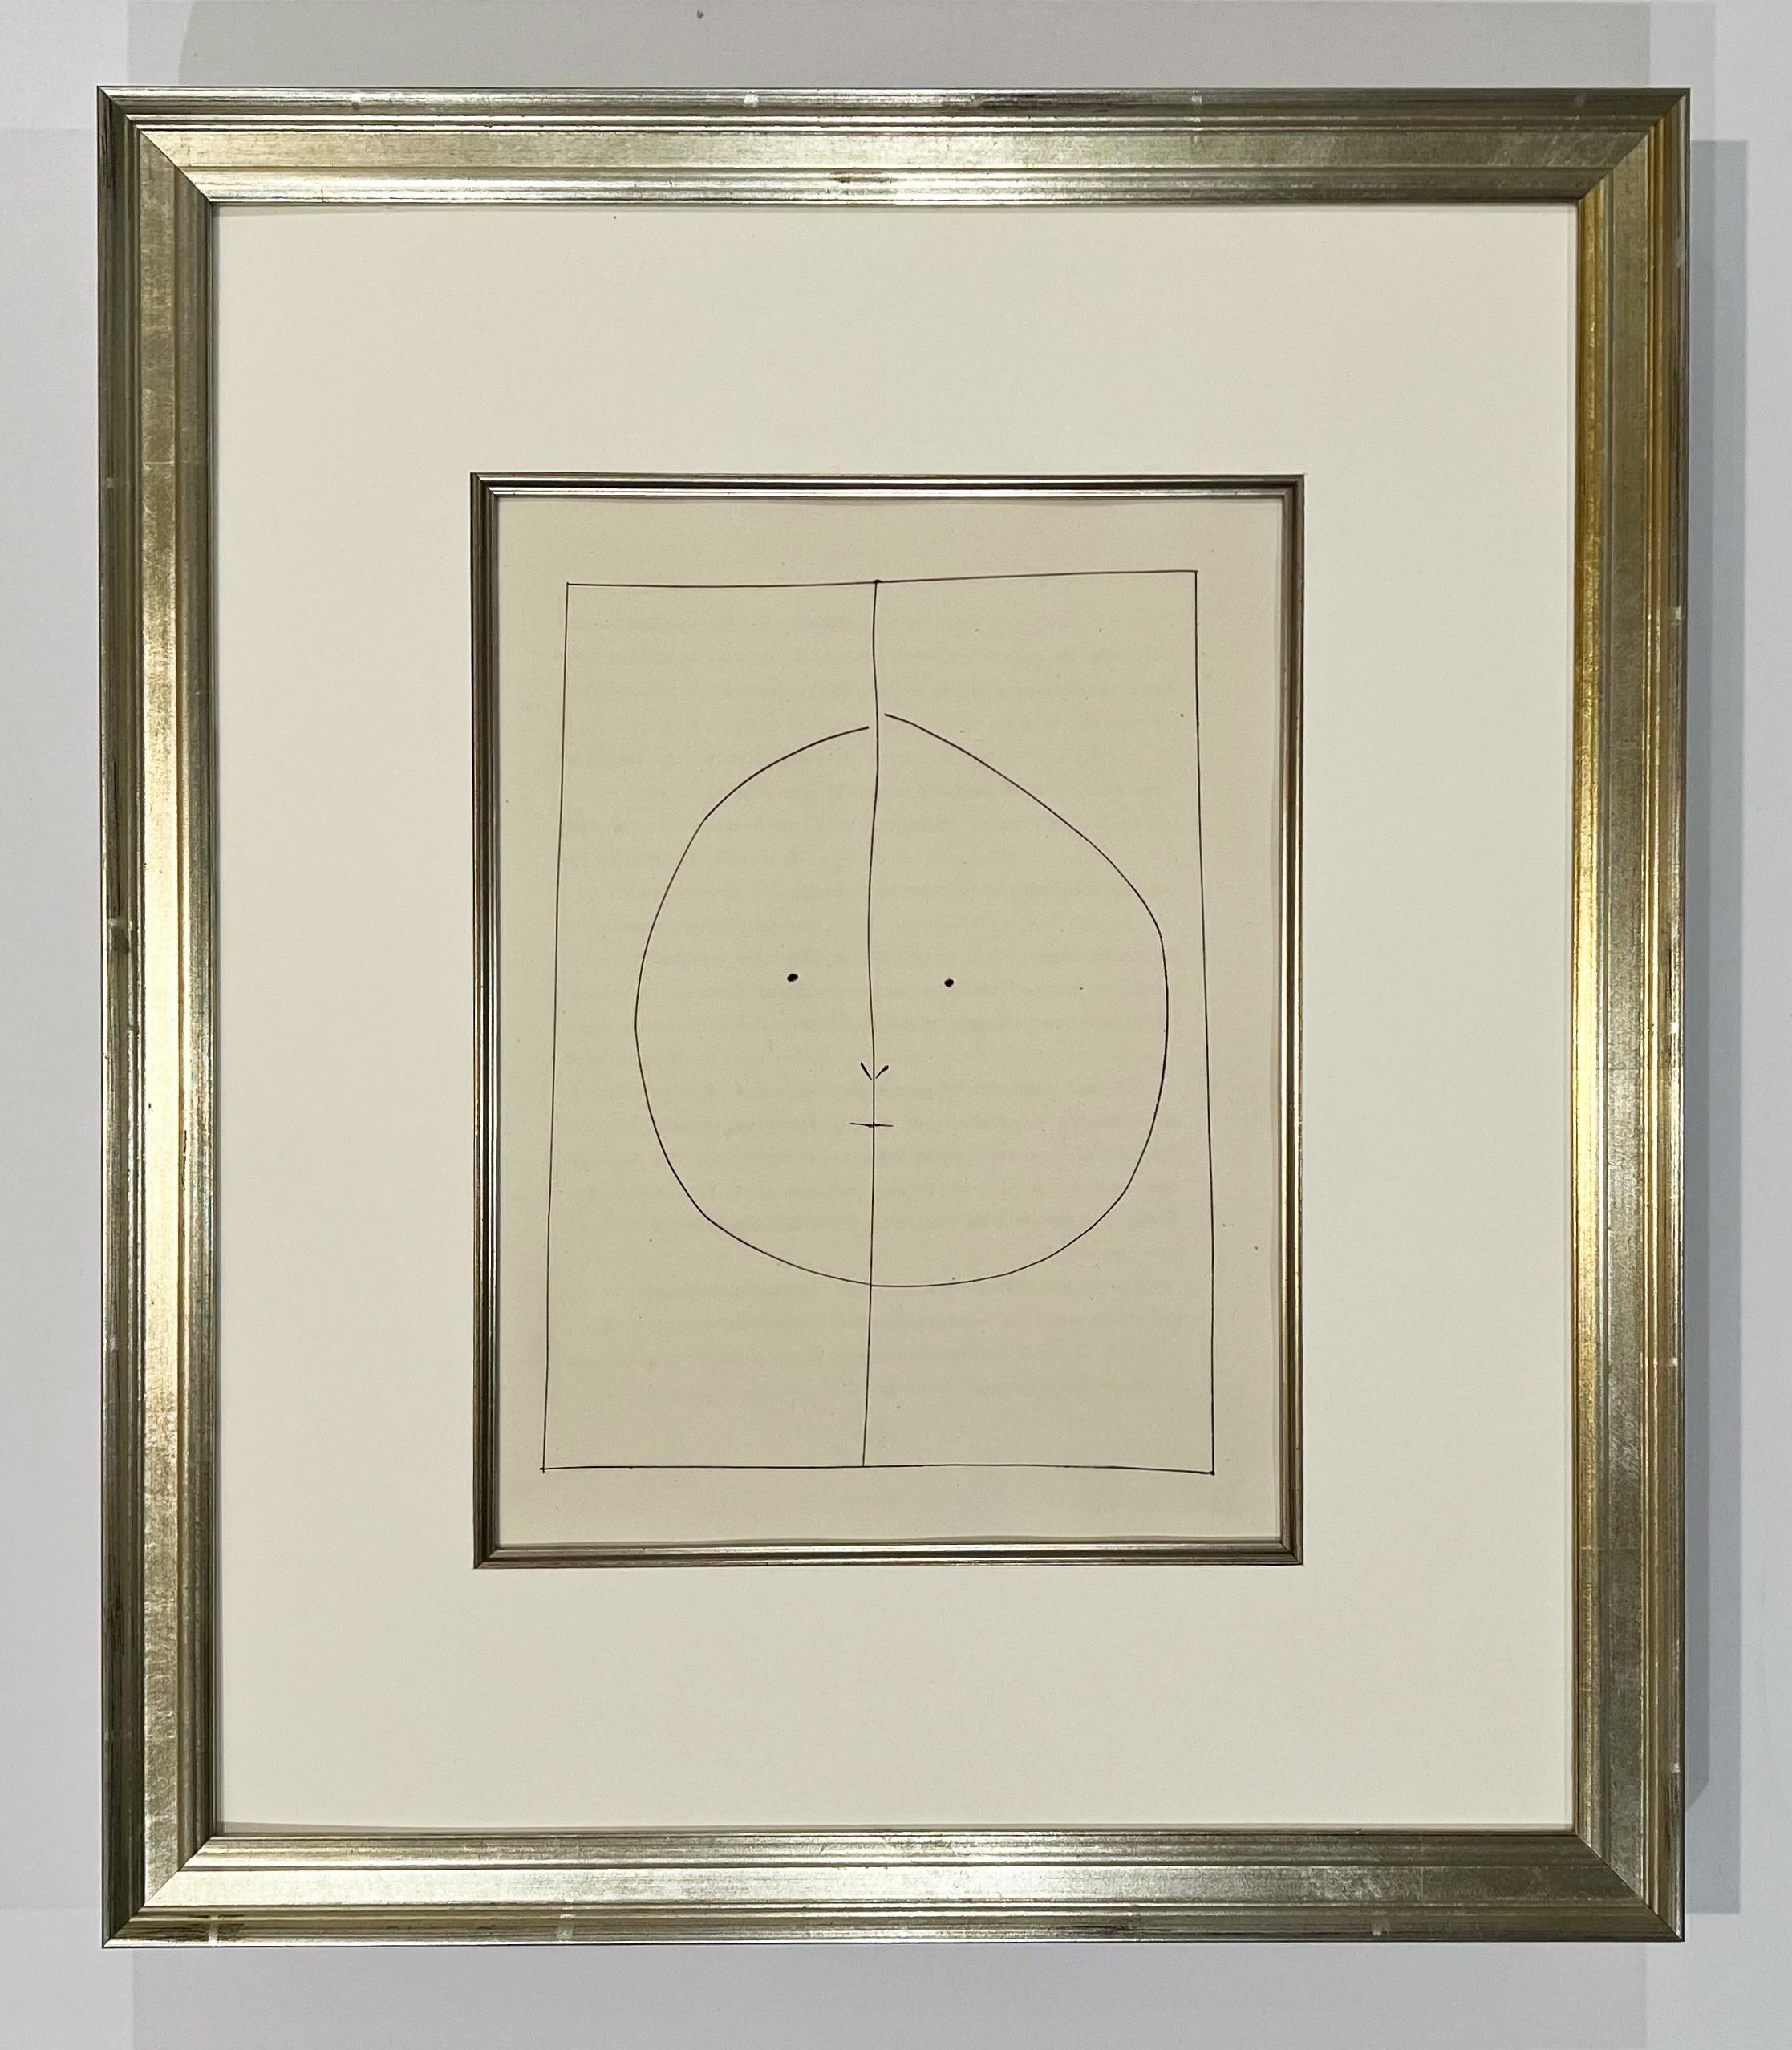 Ovaler Kopf mit Dividing Line (Teller XXIX), von Carmen – Print von Pablo Picasso